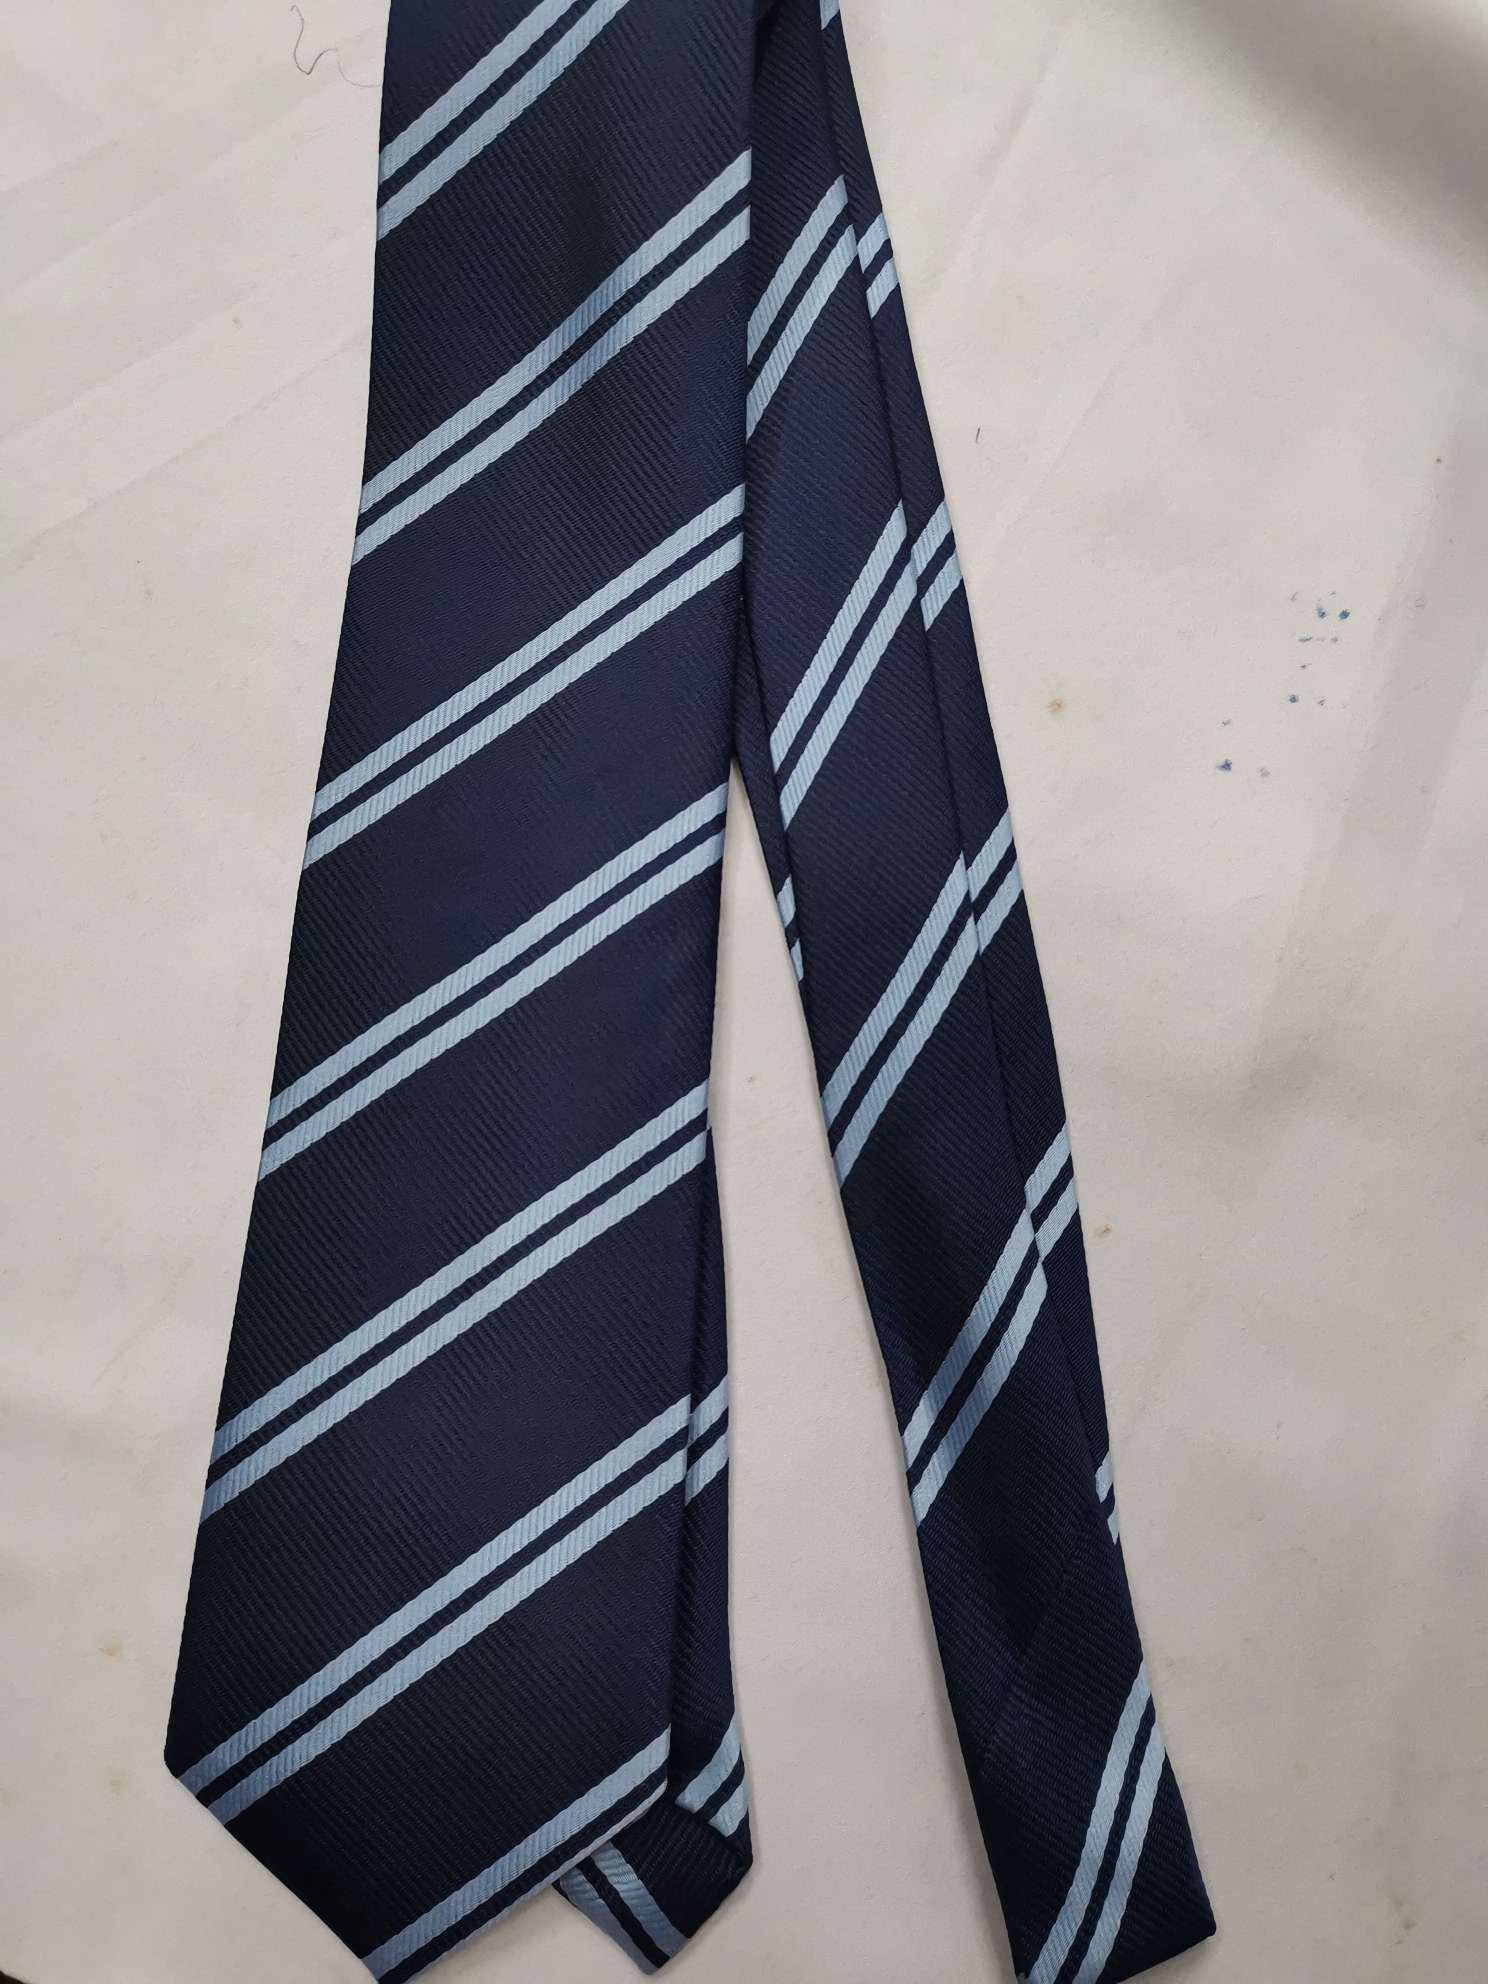 School tie  学生领带